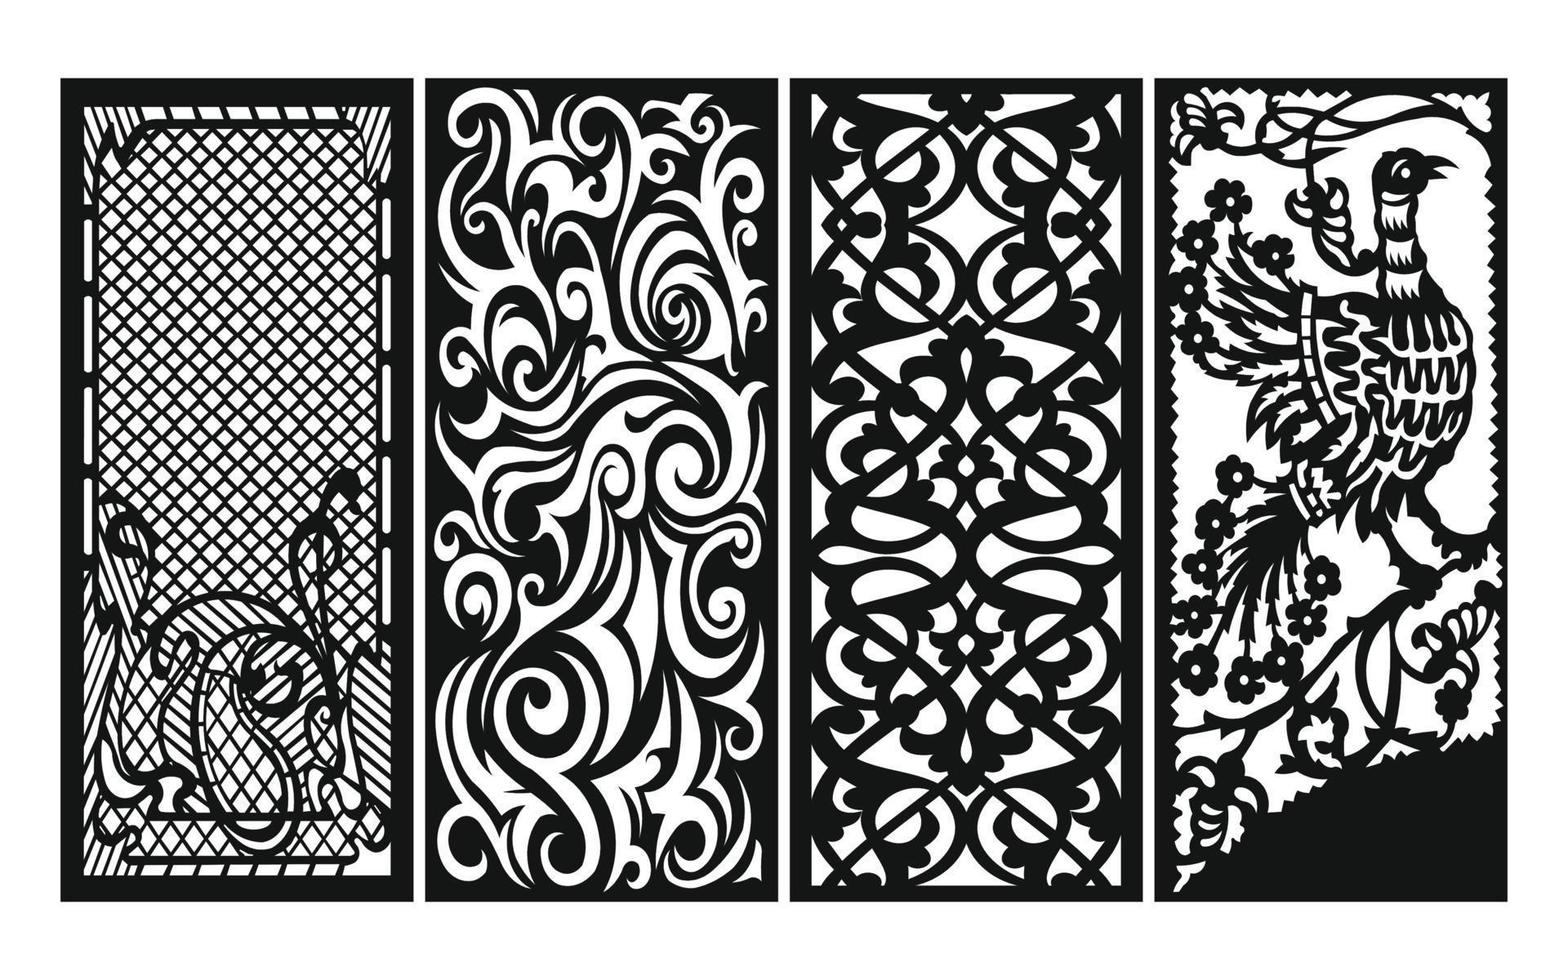 patrones negros con fondo blanco, vectores islámicos con paneles florales para corte láser cnc